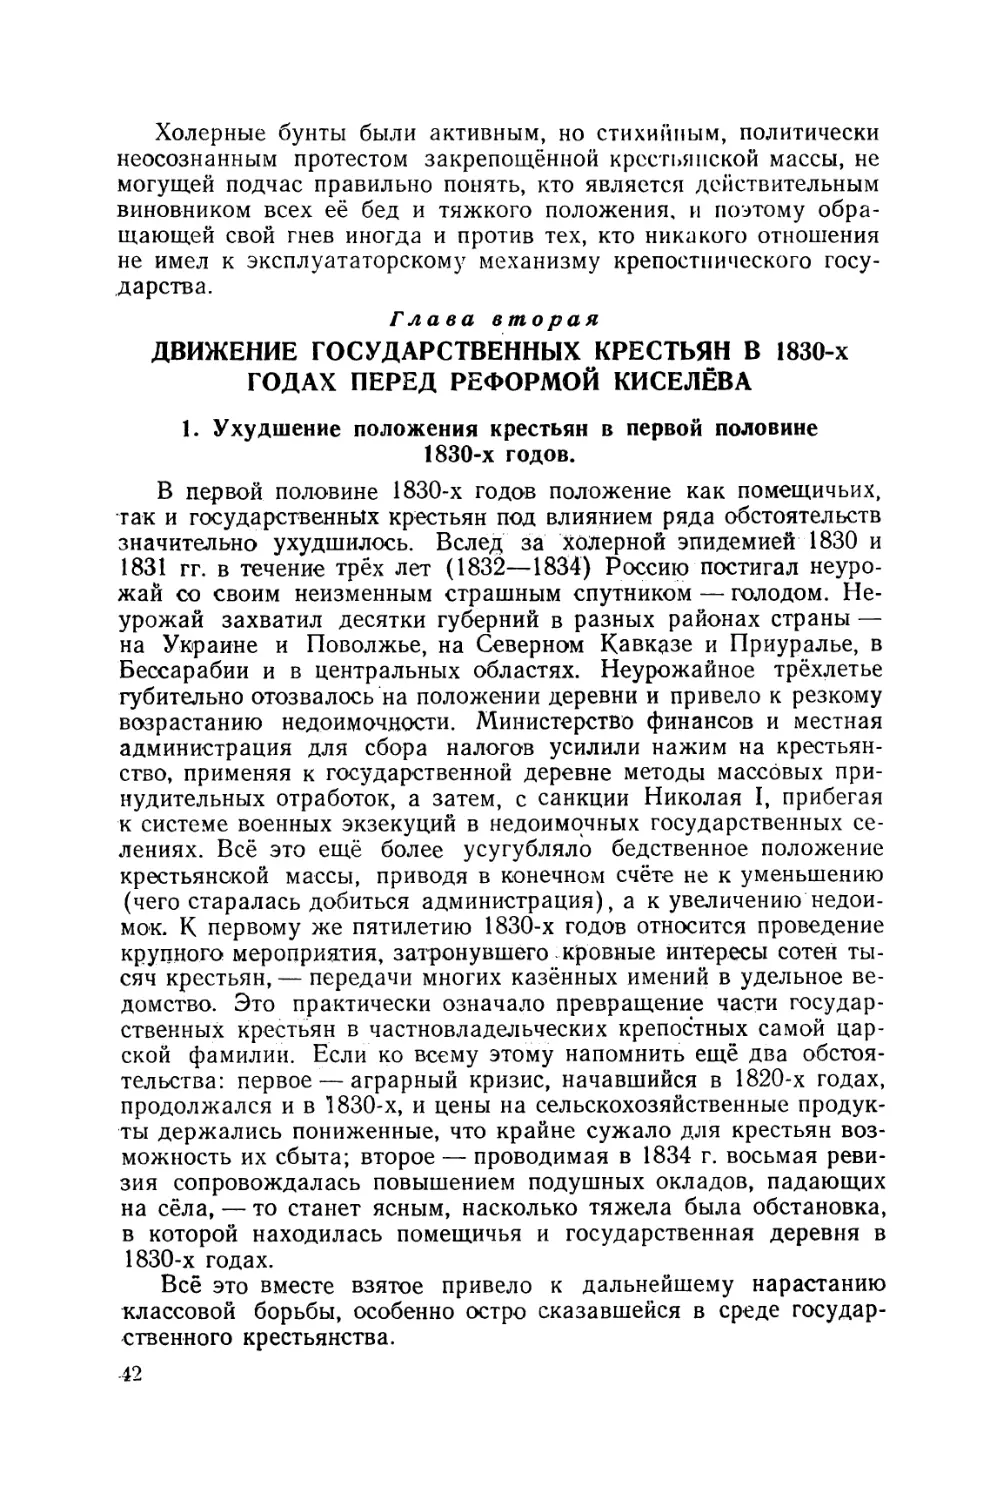 Глава II. Движение государственных крестьян в 1830-х годах перед реформой Киселёва